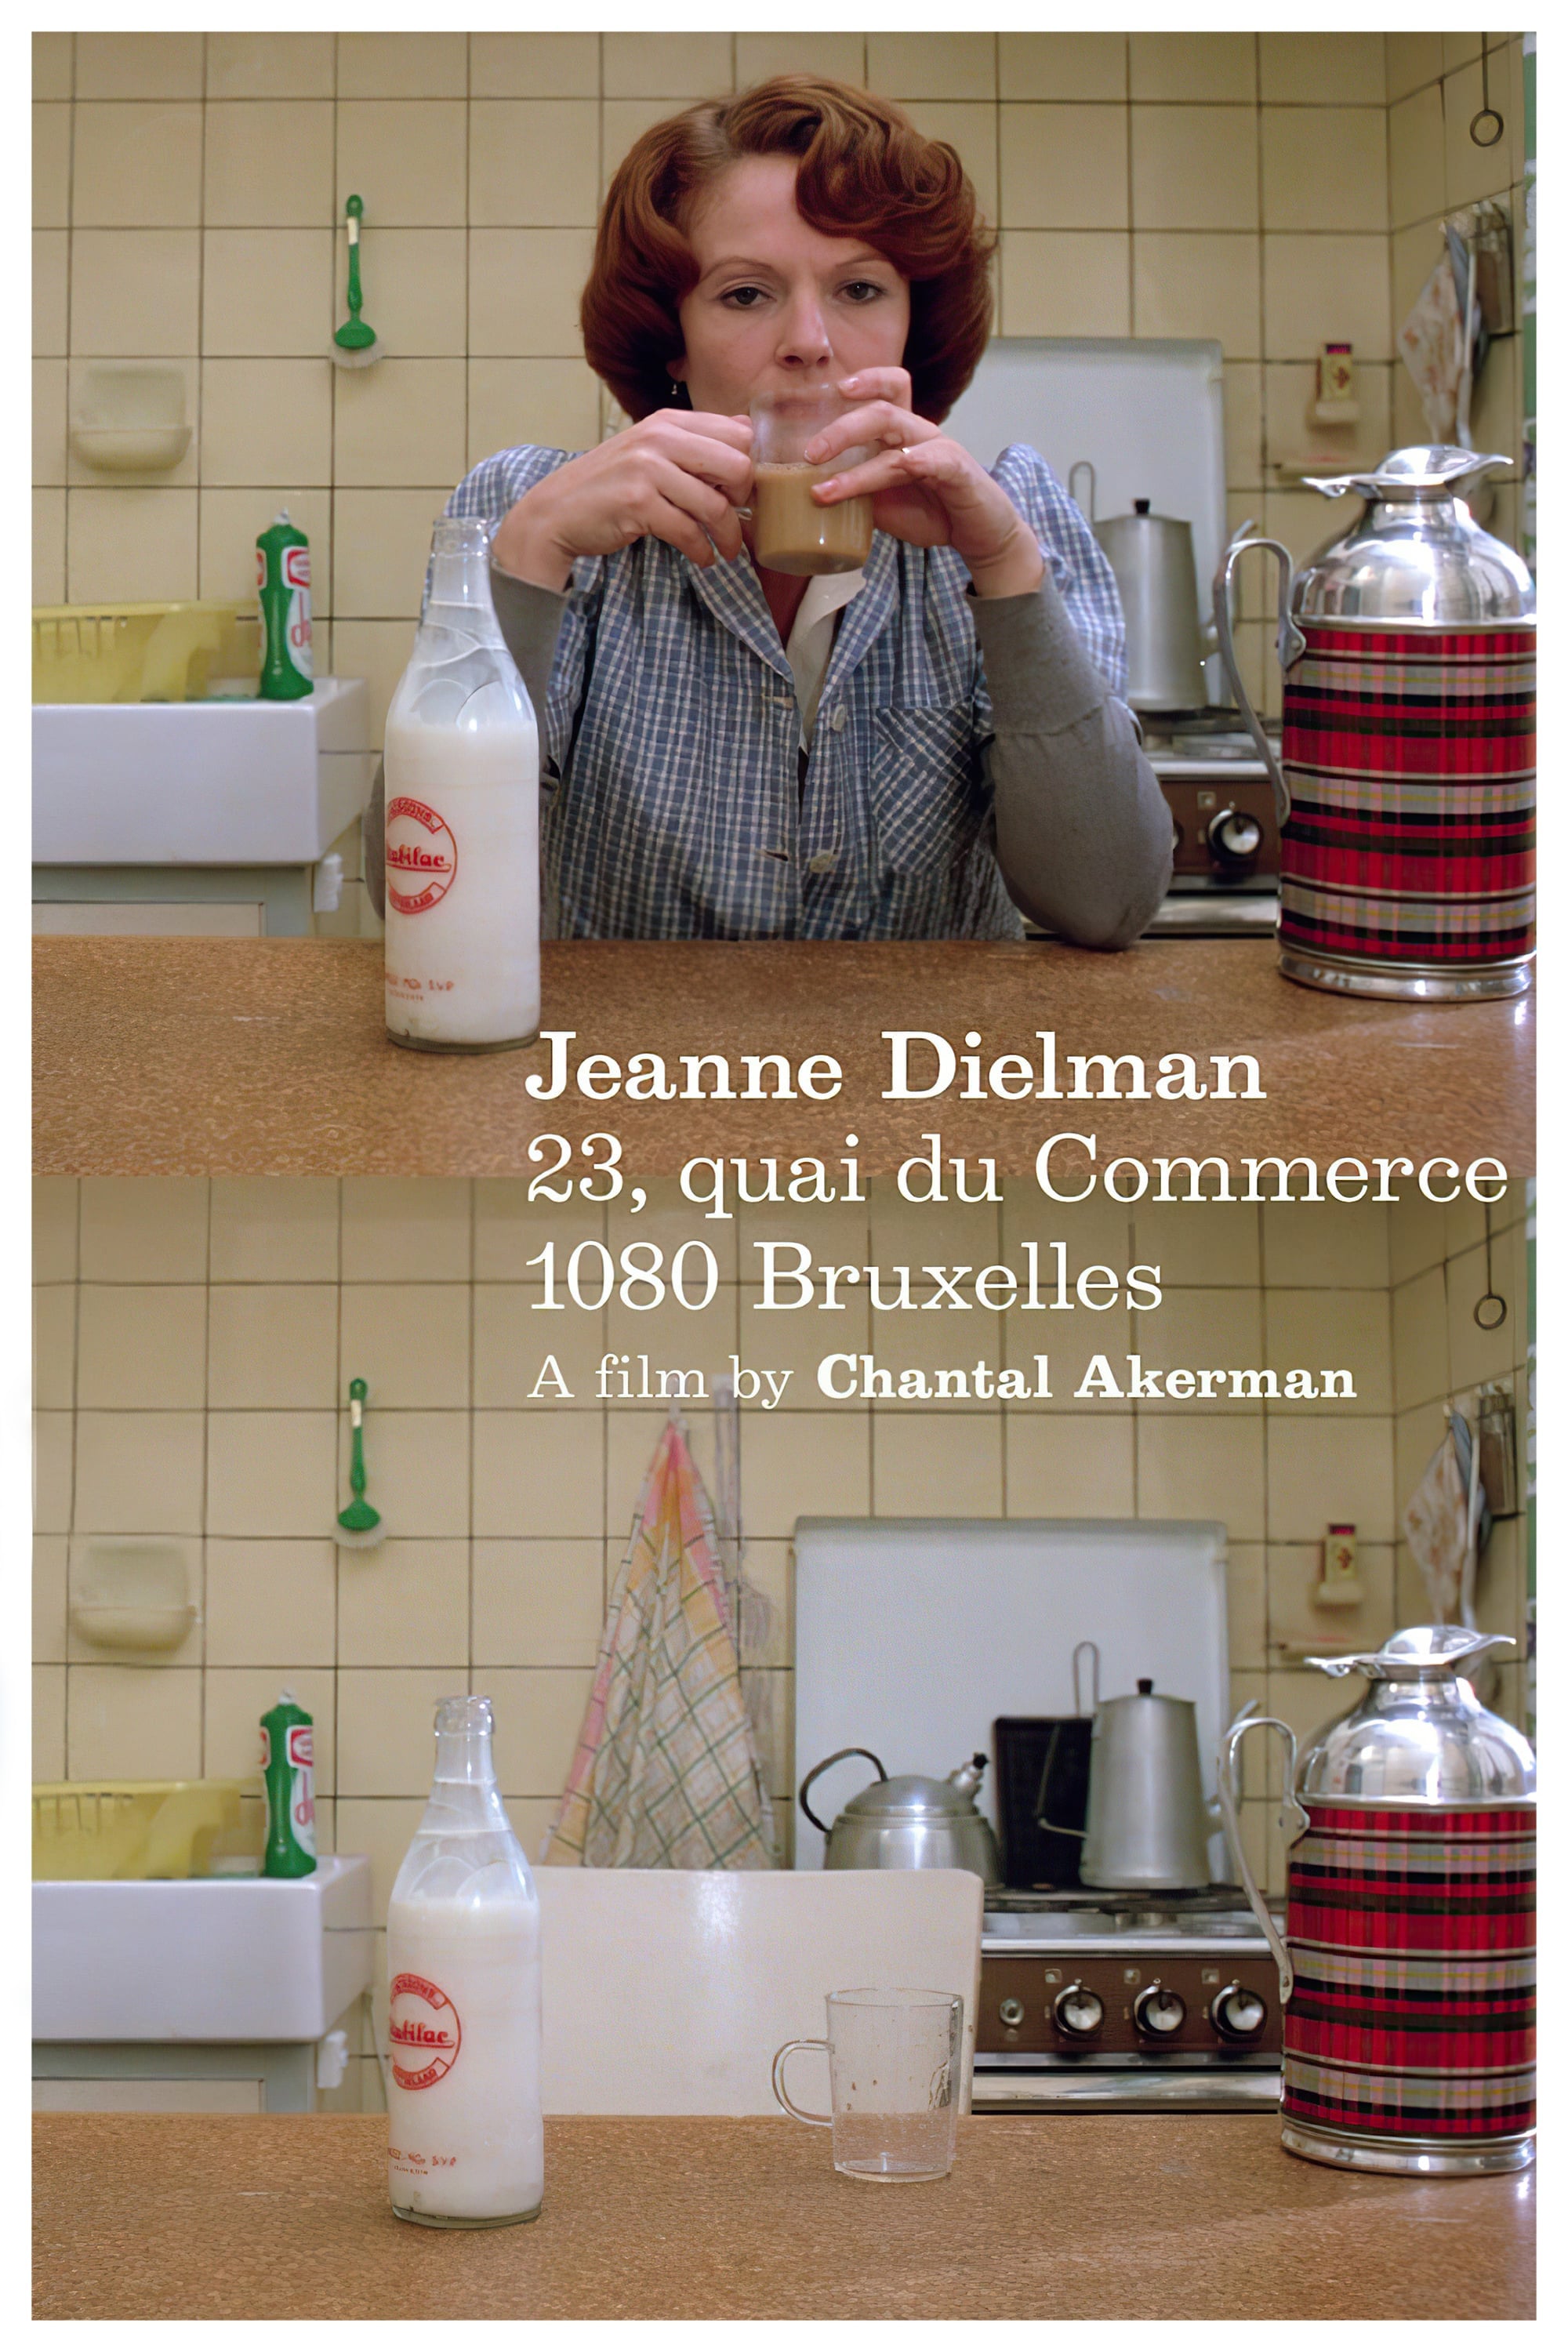 Jeanne Dielman, 23 quai du Commerce, 1080 Bruxelles Picture